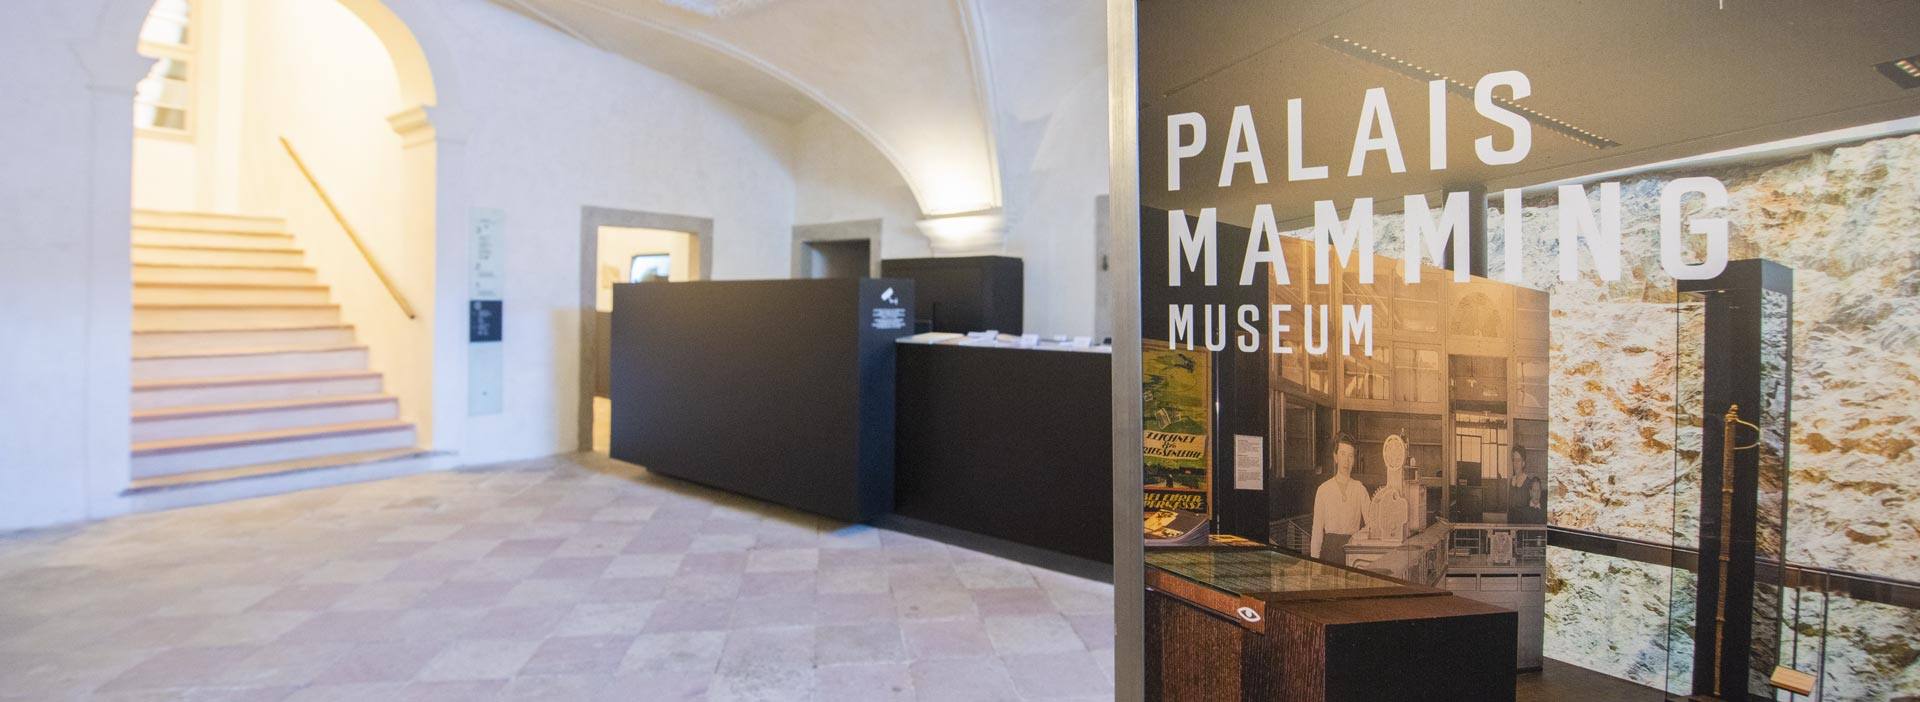 Palais Mamming Museum